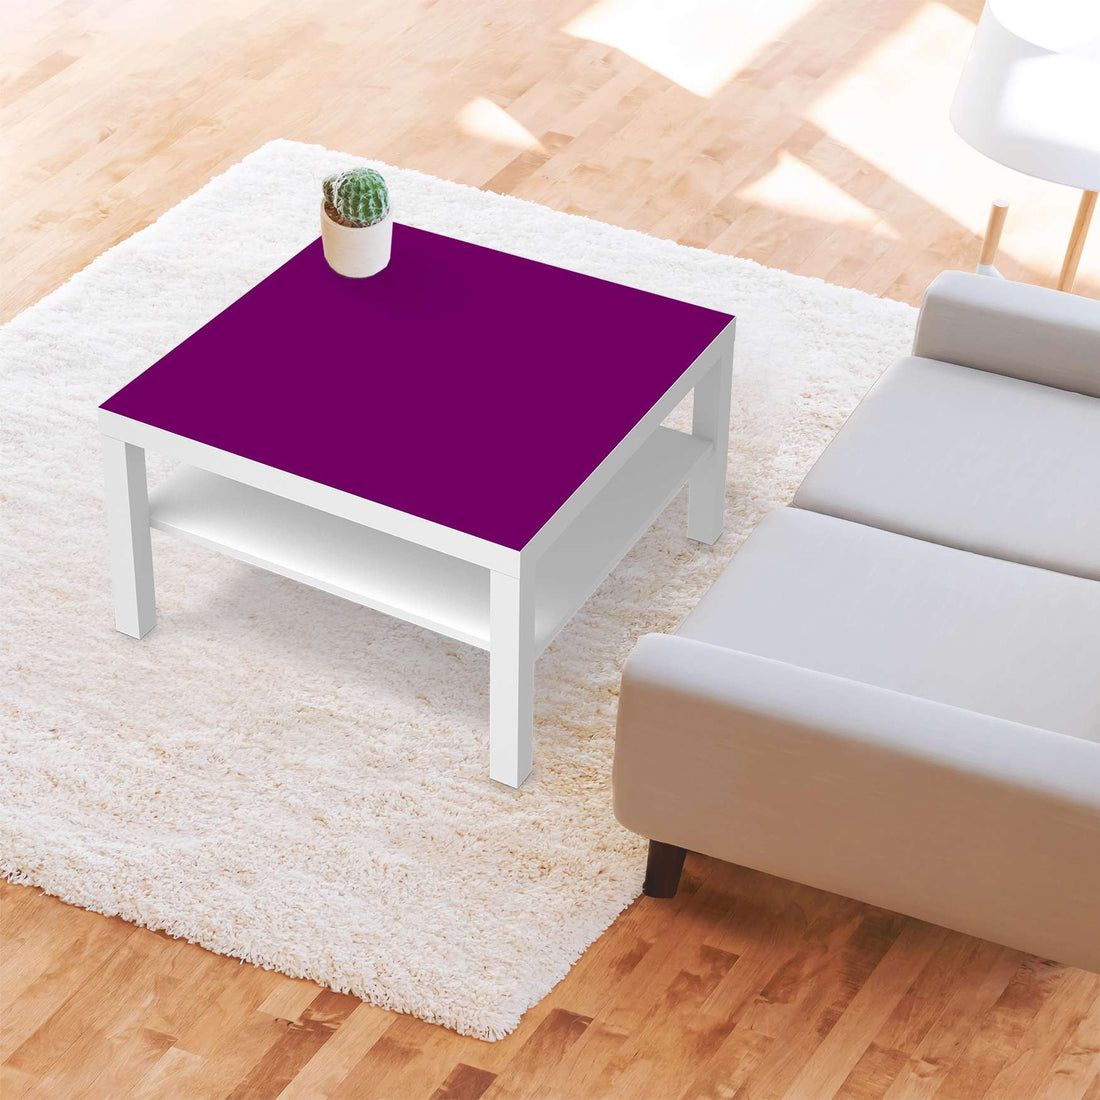 Selbstklebende Folie Flieder Dark - IKEA Lack Tisch 78x78 cm - Wohnzimmer